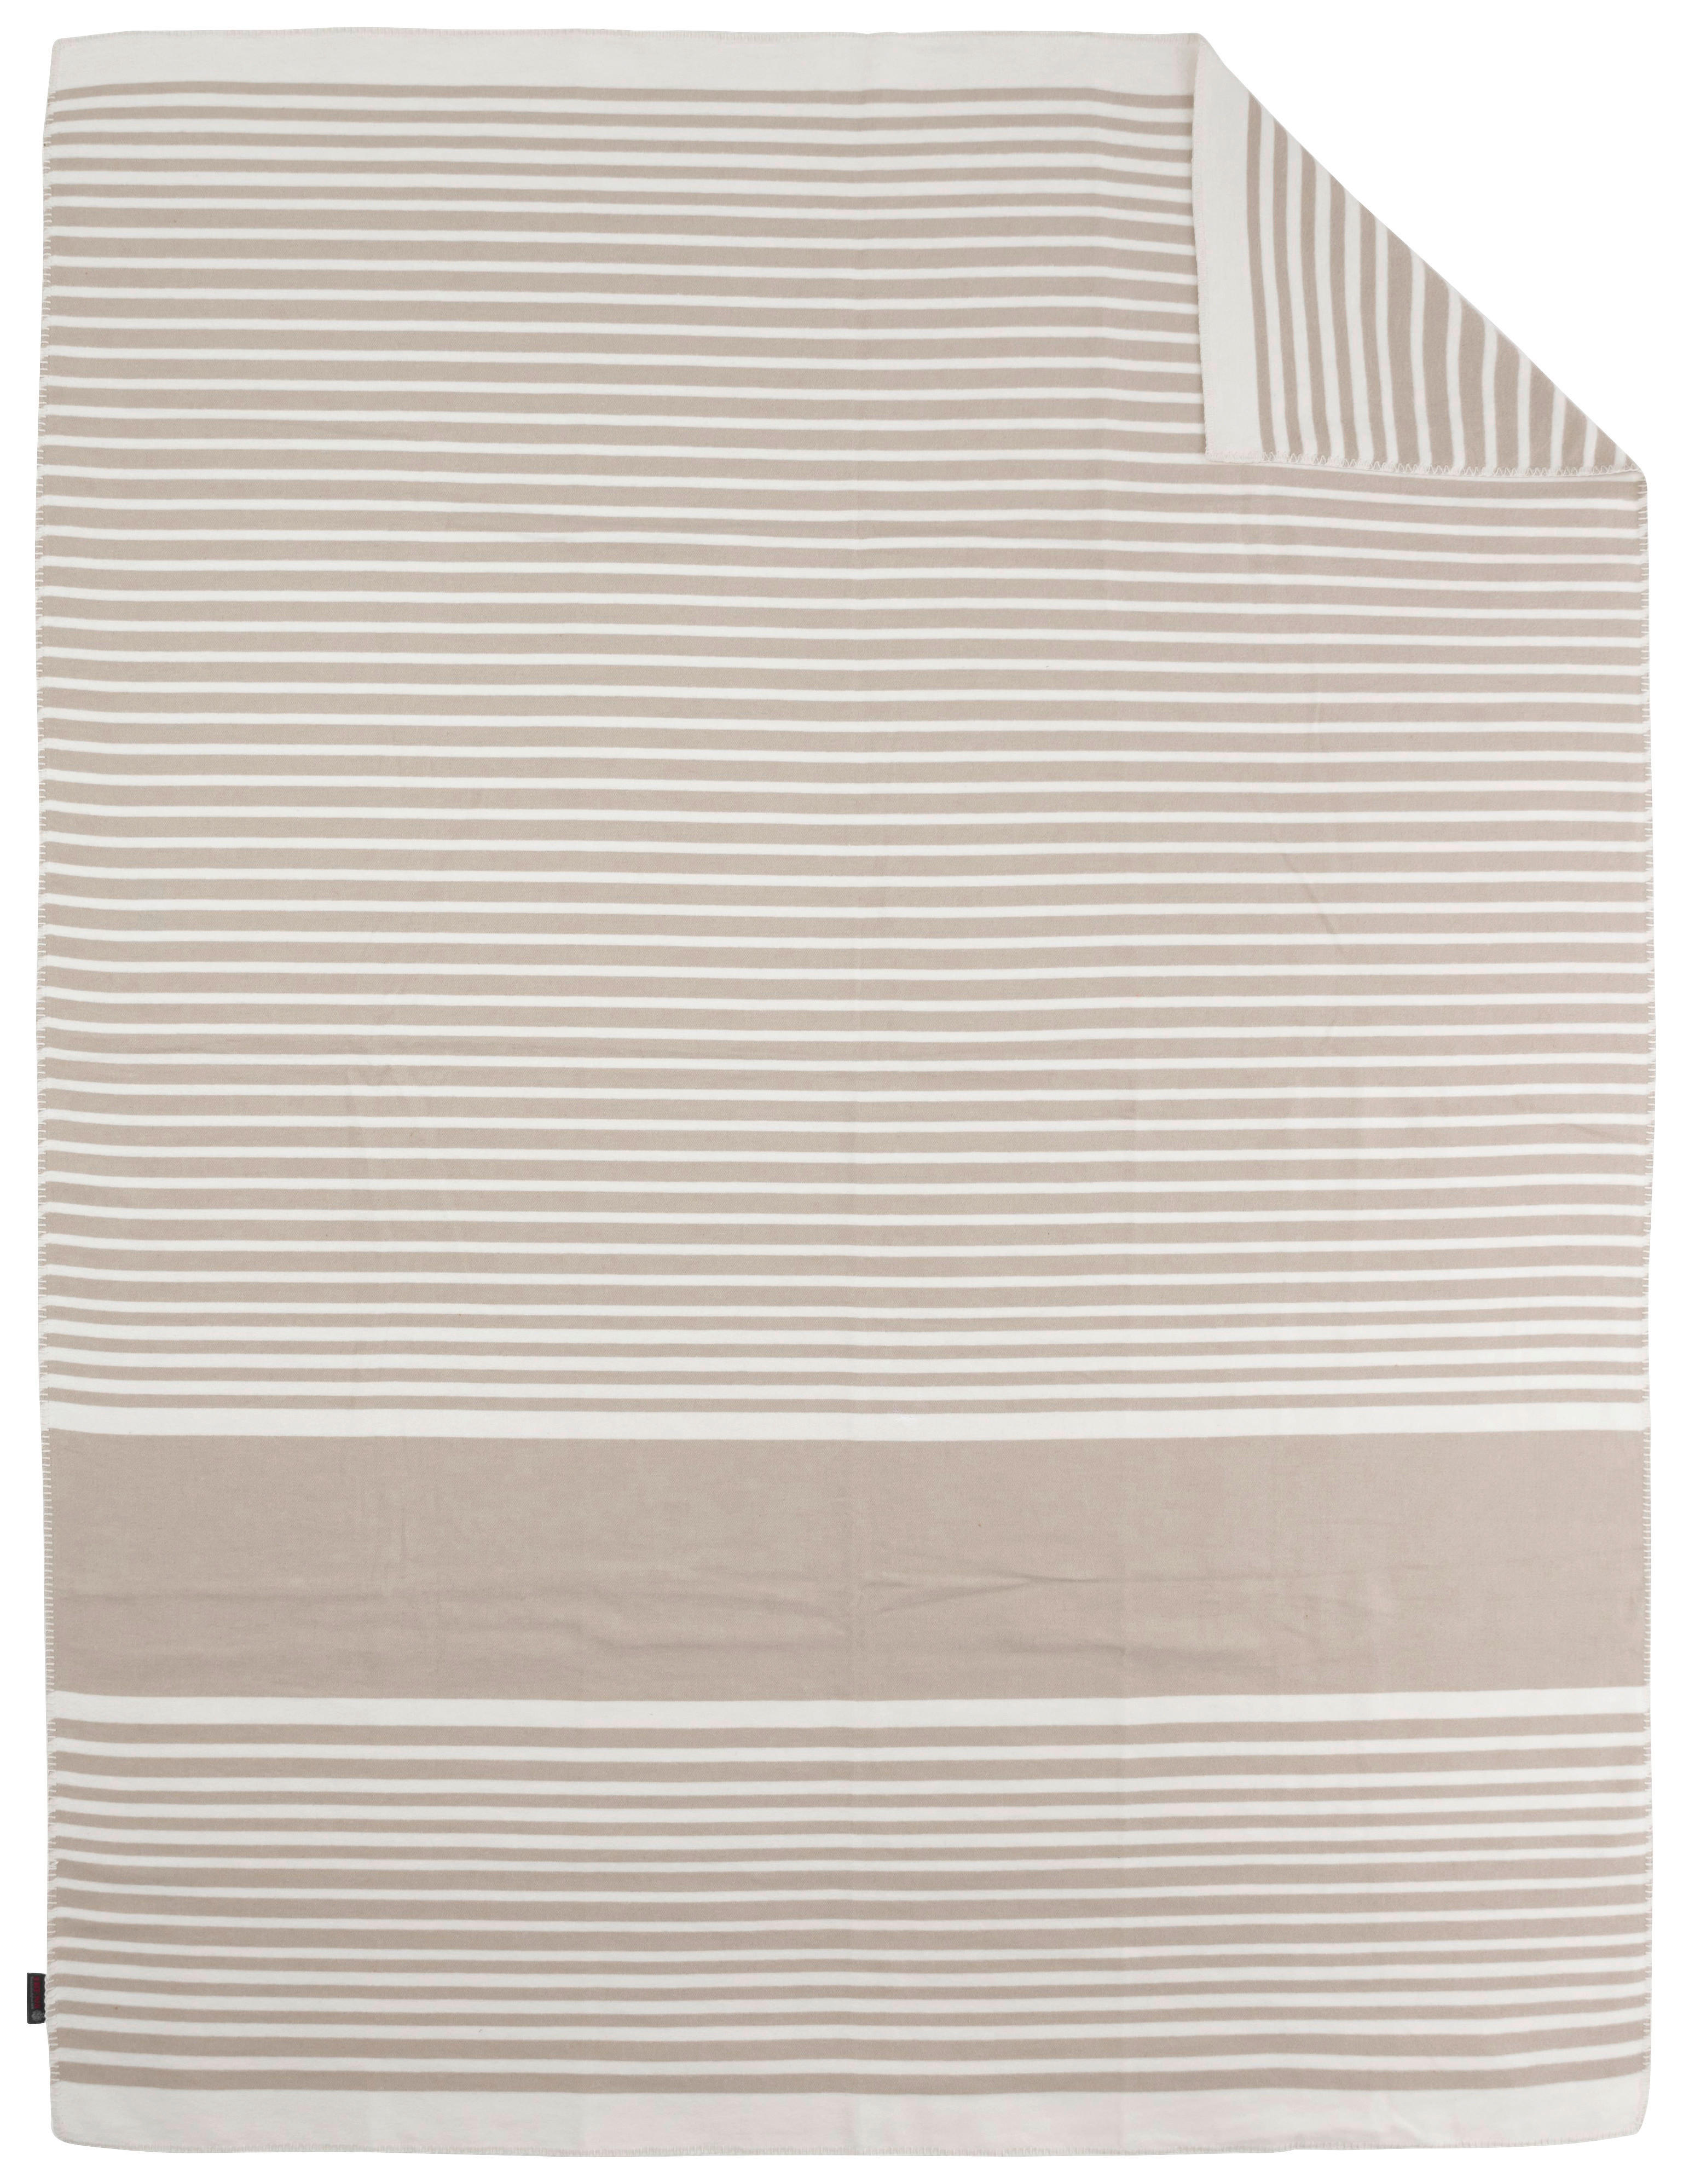 DECKE Ibiza 3060 Natur 150/200 cm  - Naturfarben/Weiß, KONVENTIONELL, Textil (150/200cm) - Ibena